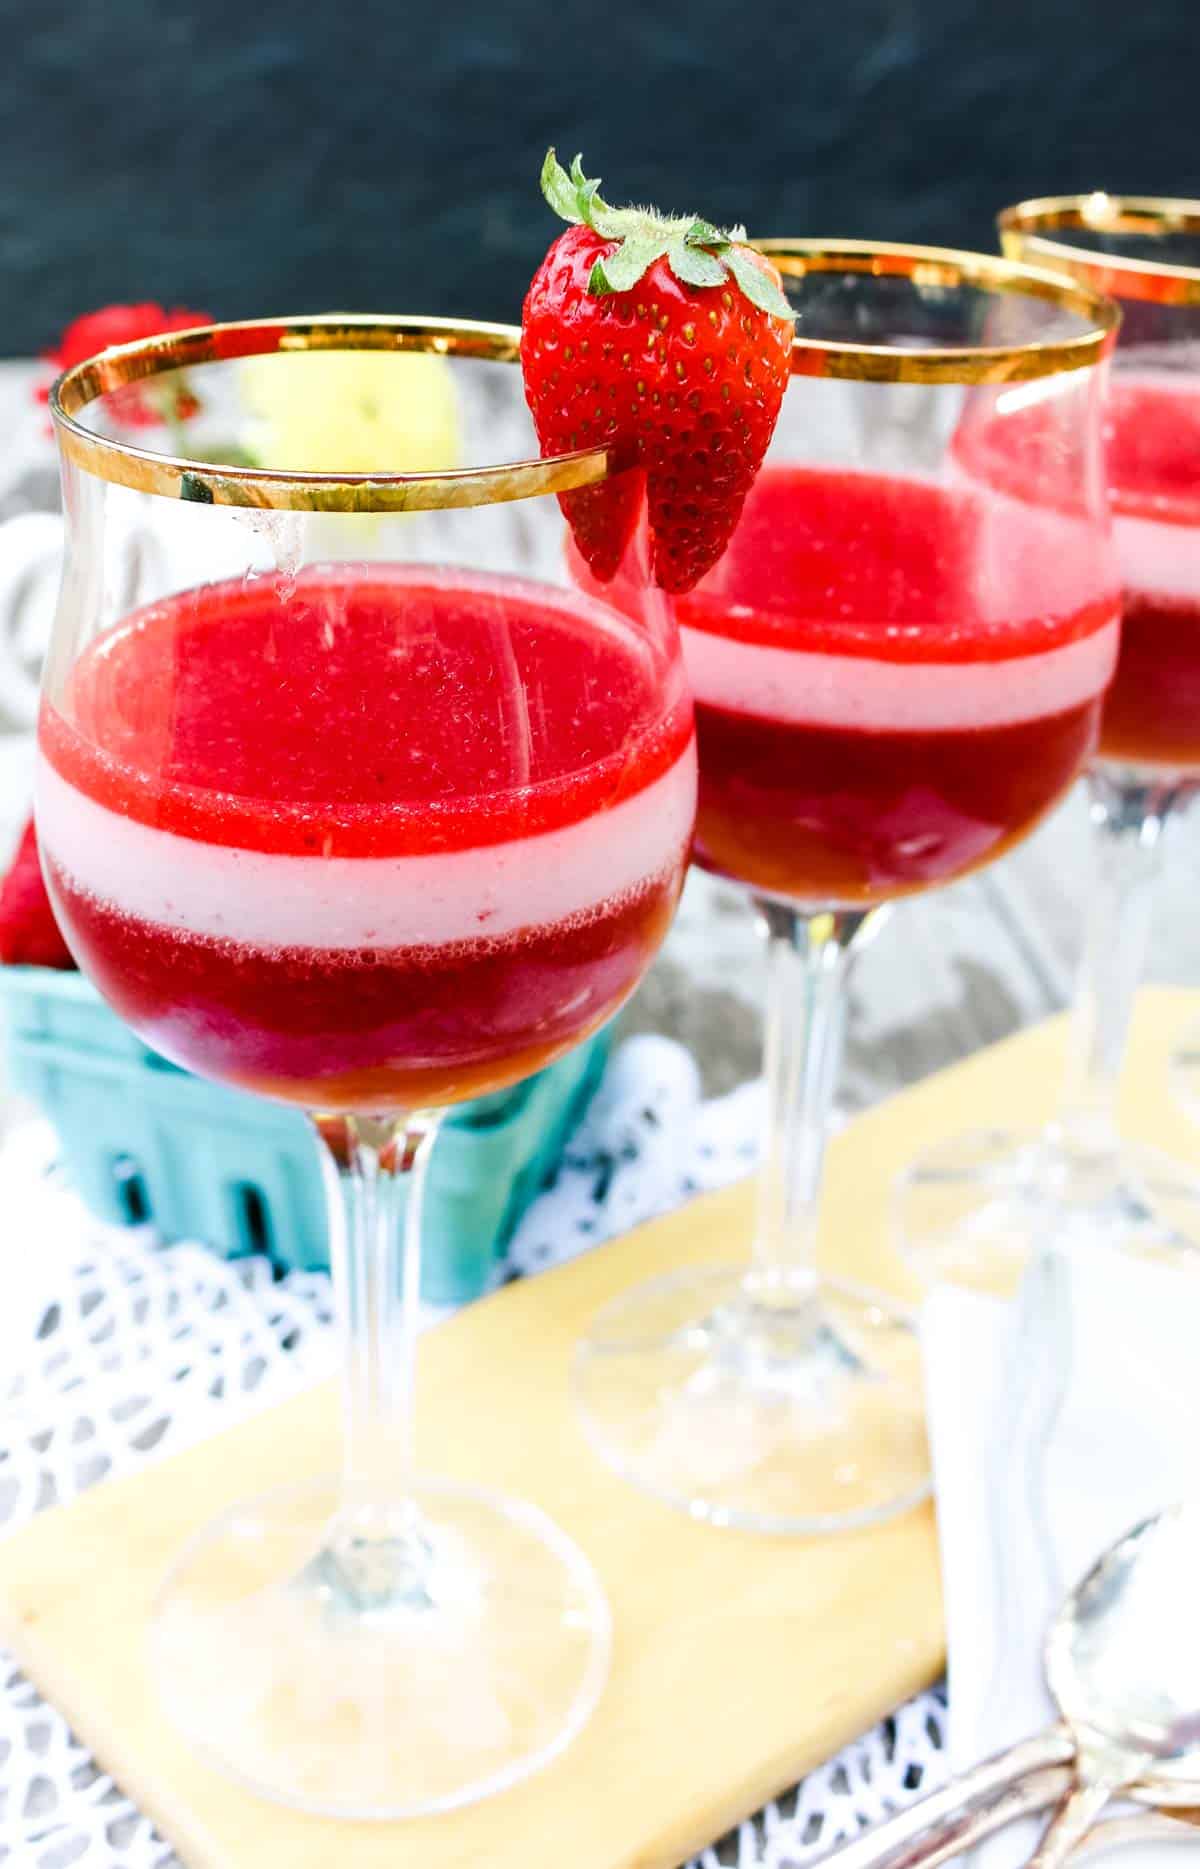 Layered homemade strawberry and cream dessert in wine glasses with fresh strawberries as garnish.